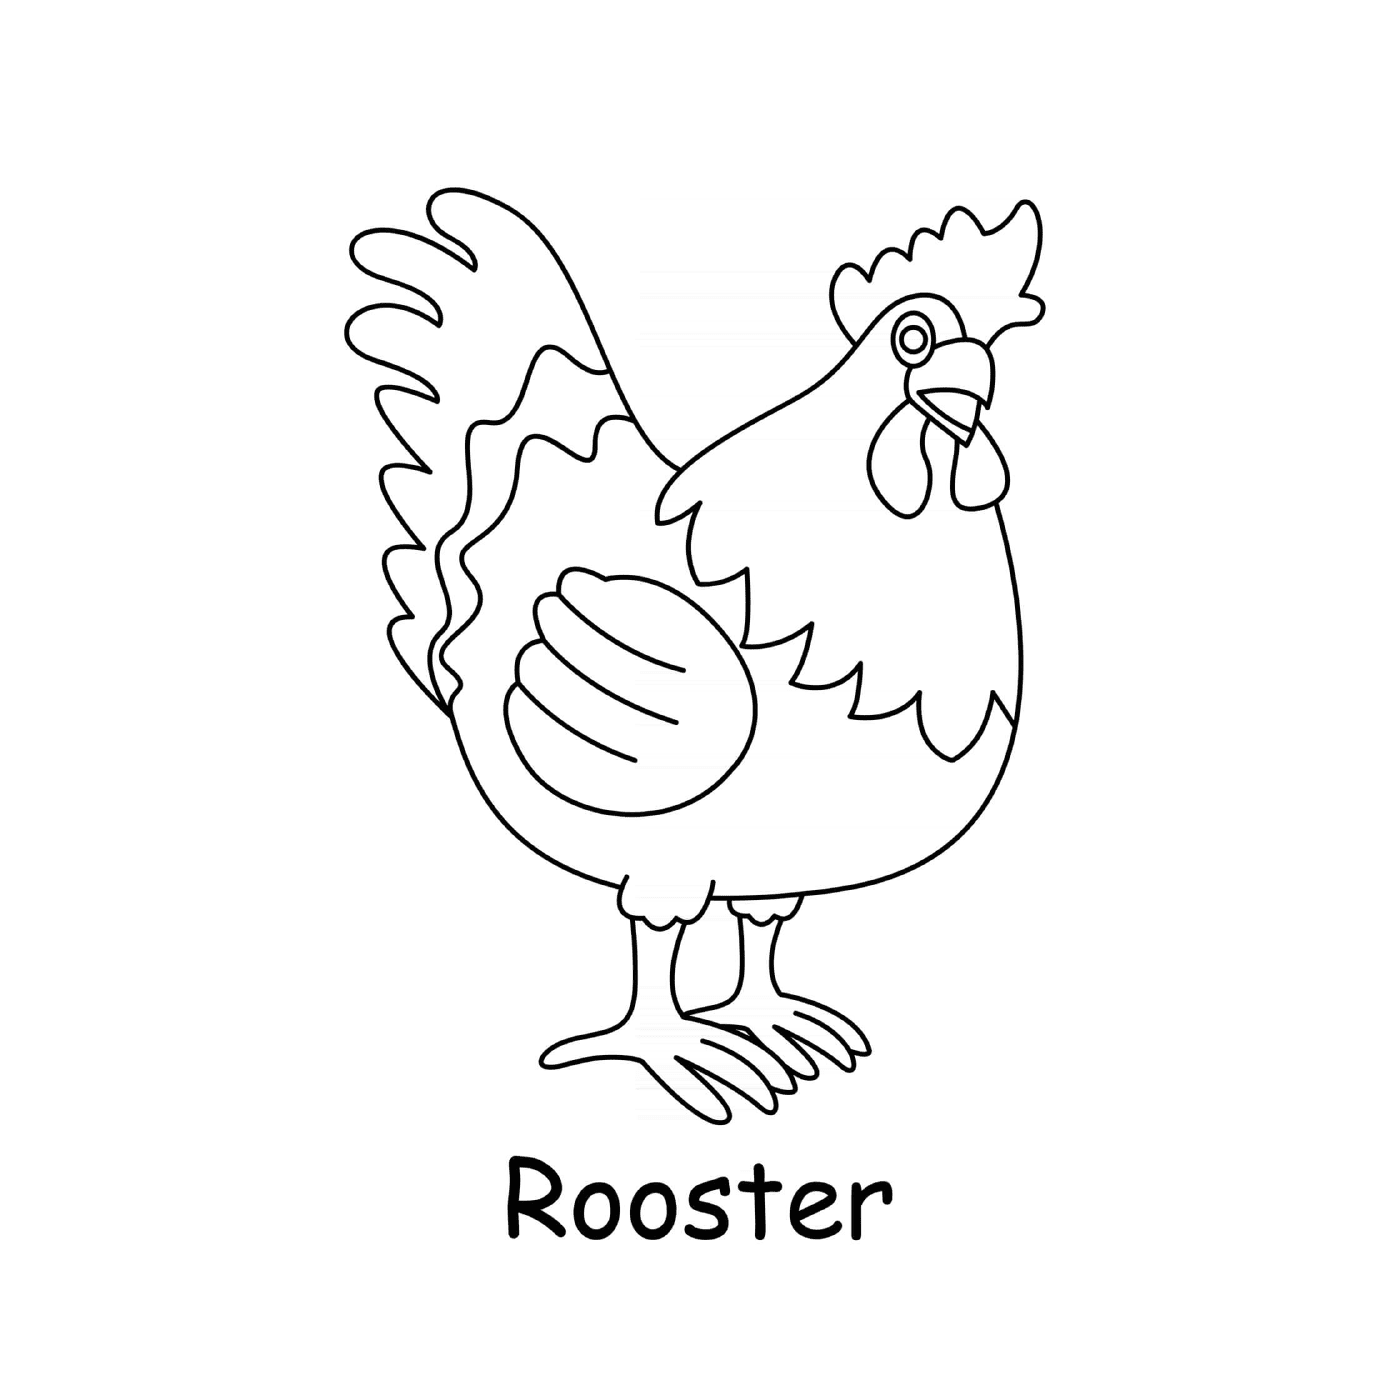   Coq poule mâle rooster 